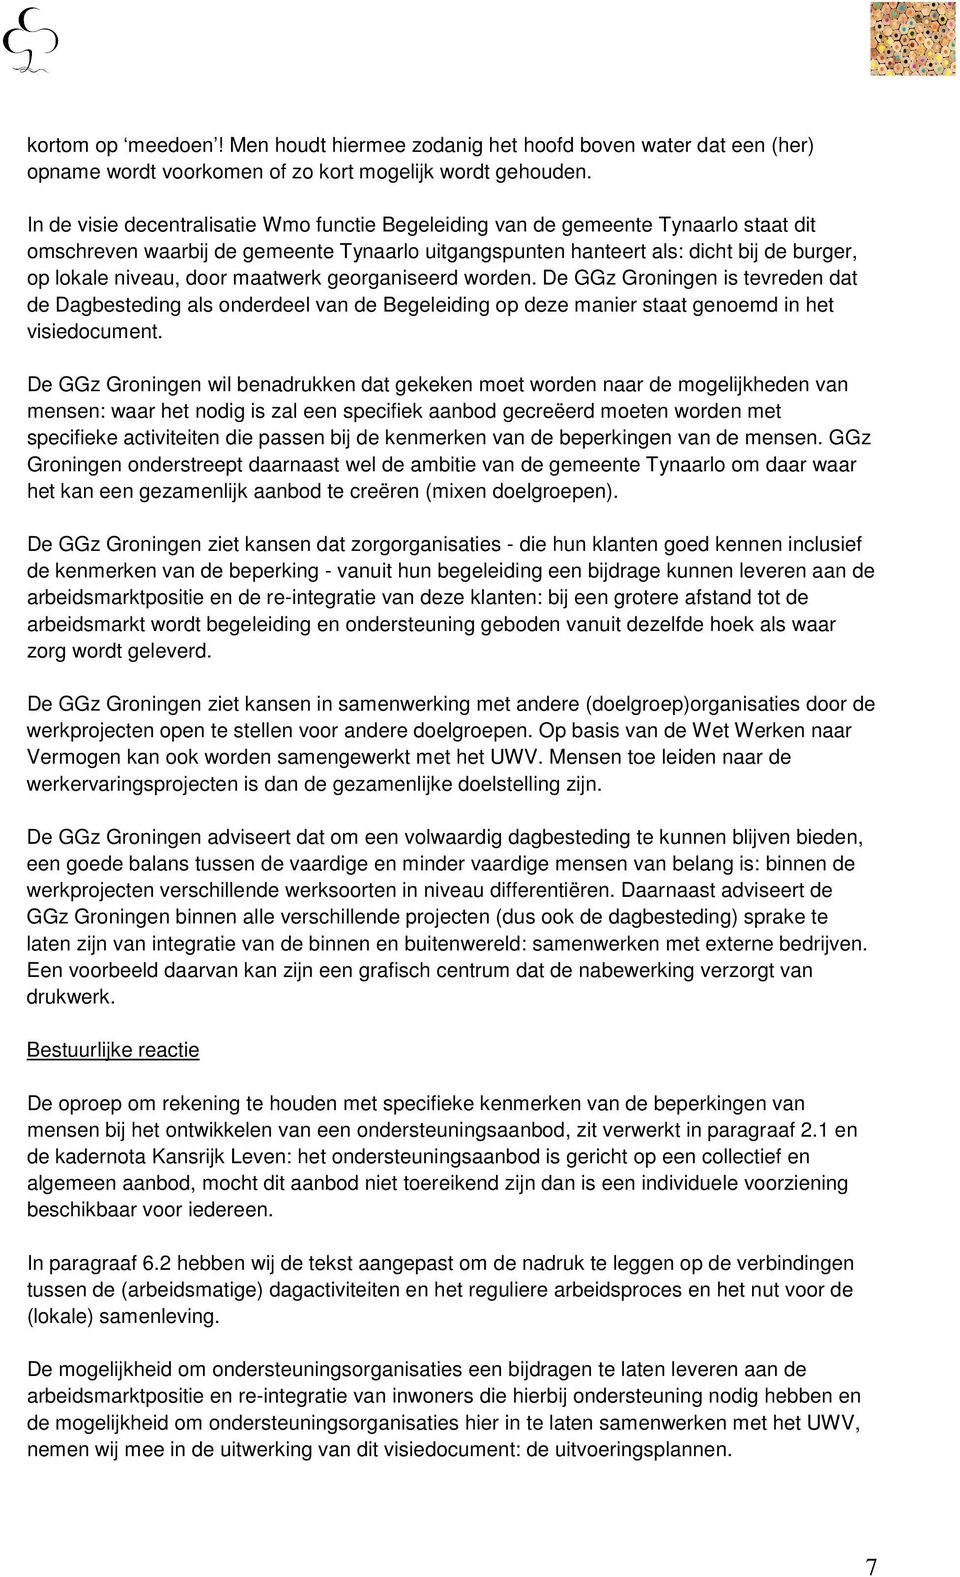 maatwerk georganiseerd worden. De GGz Groningen is tevreden dat de Dagbesteding als onderdeel van de Begeleiding op deze manier staat genoemd in het visiedocument.